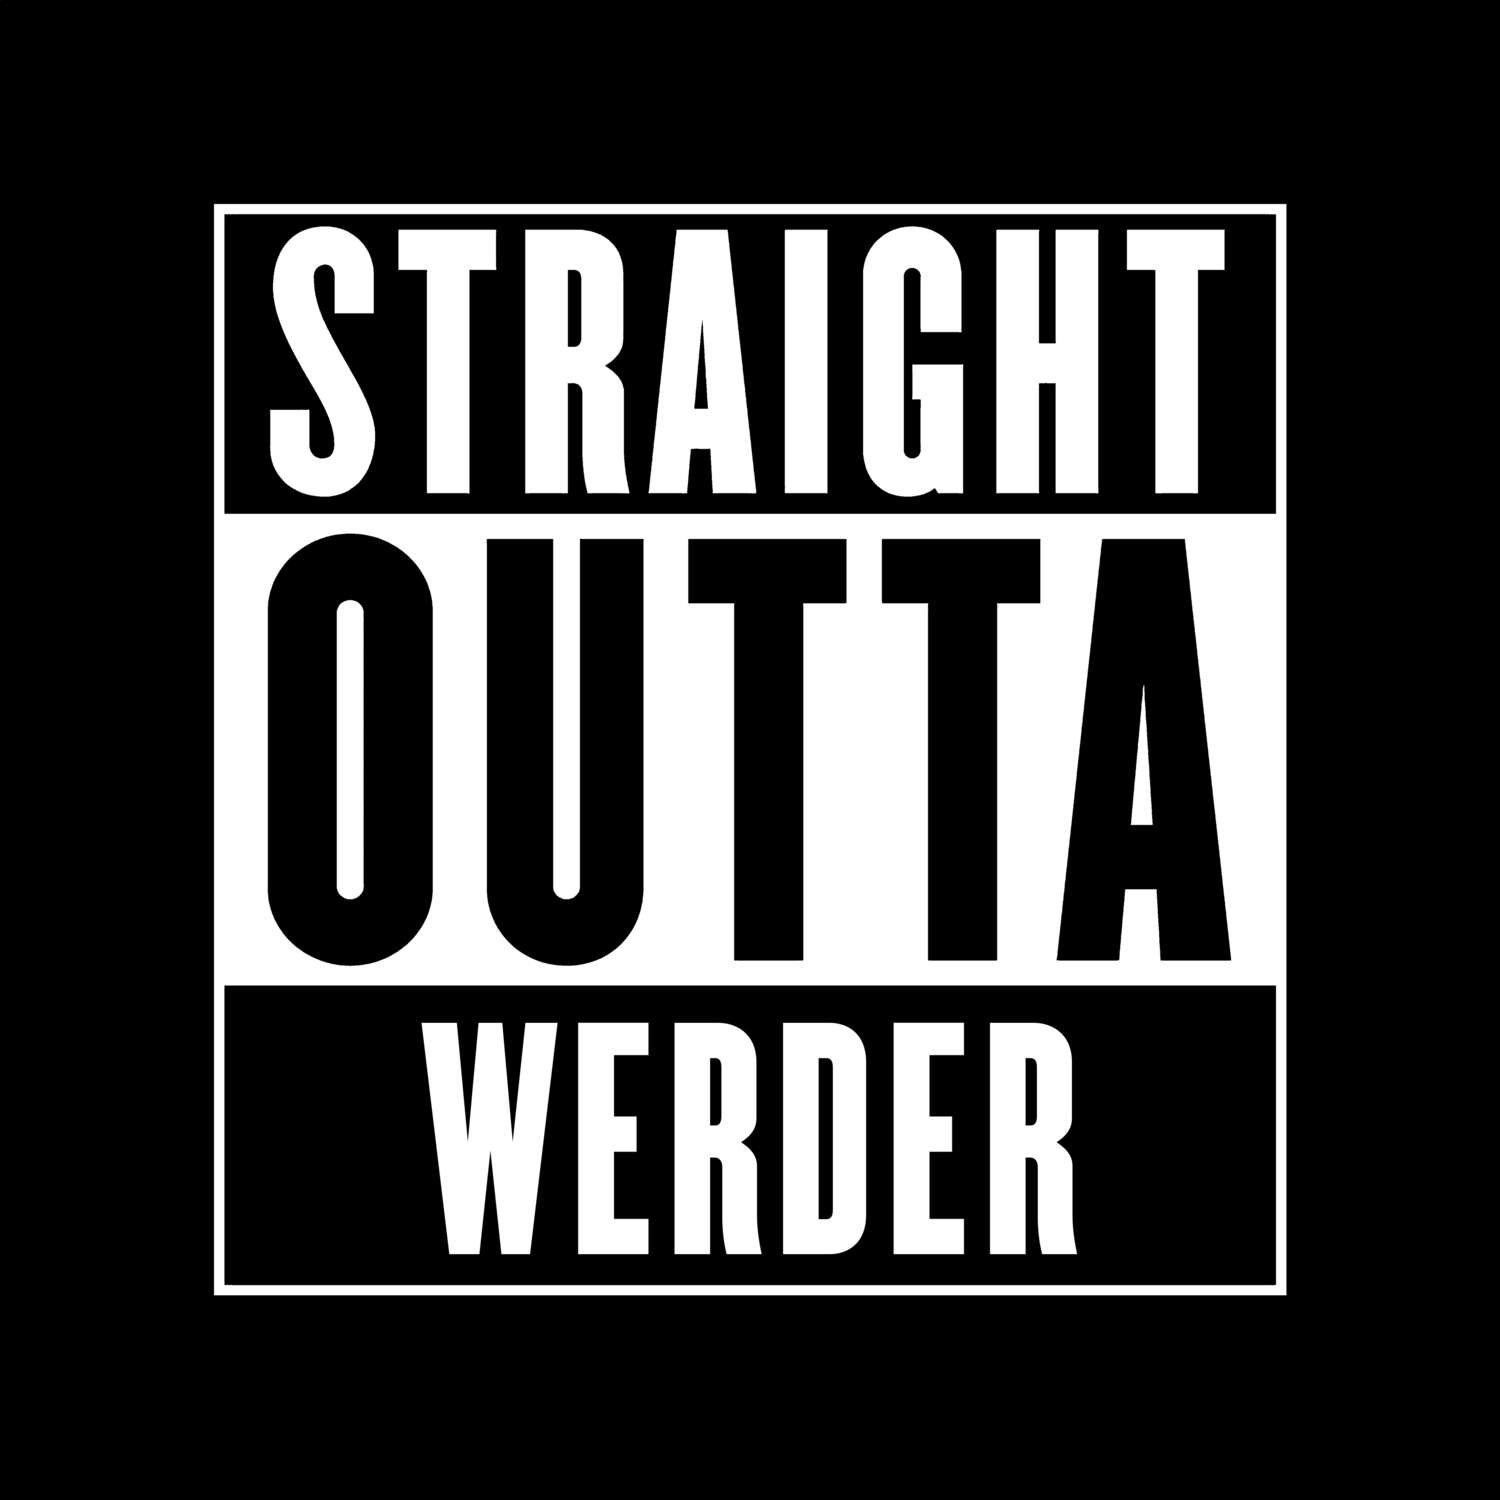 Werder T-Shirt »Straight Outta«